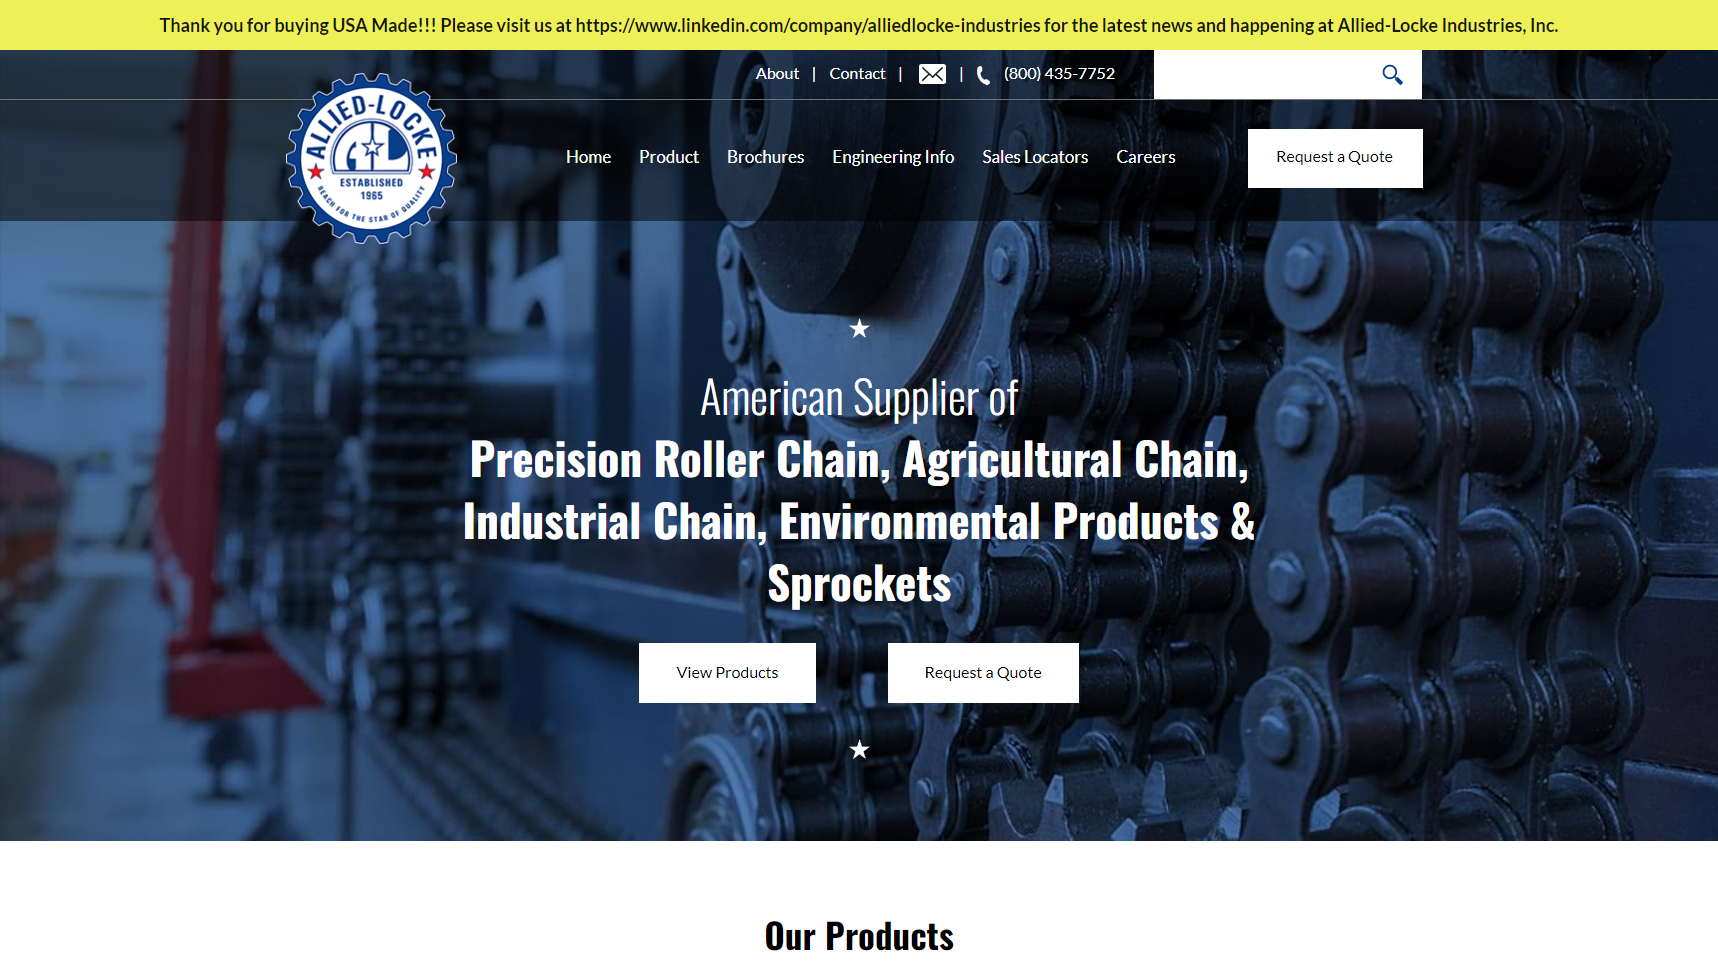 Allied-Locke Industries - Chain Manufacturer